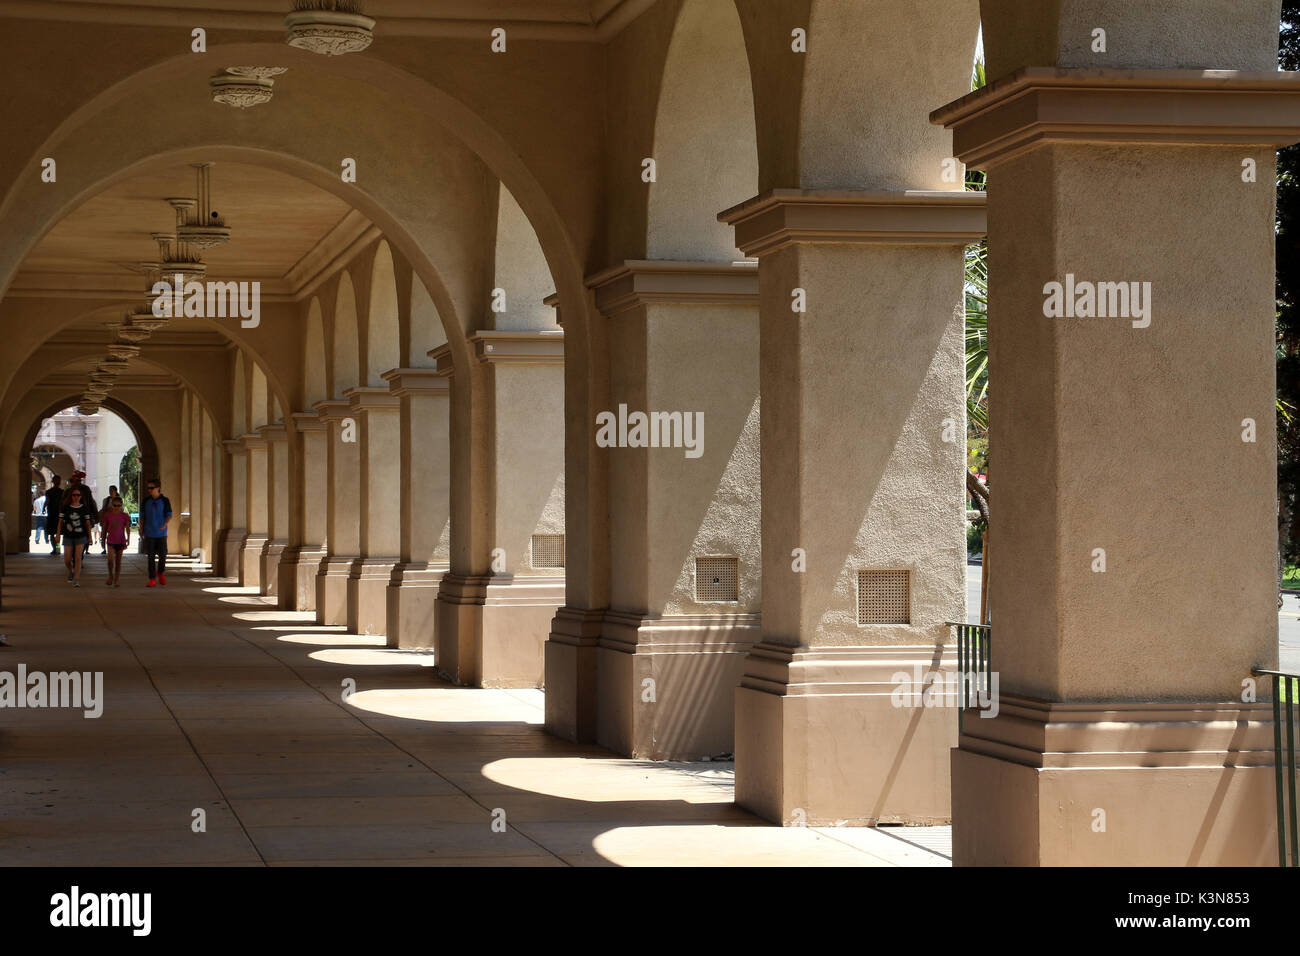 Visualizza in basso uno dei Balboa Park portici con i suoi numerosi archi e colonne che gettano ombre, a San Diego, California su una soleggiata giornata estiva. Foto Stock